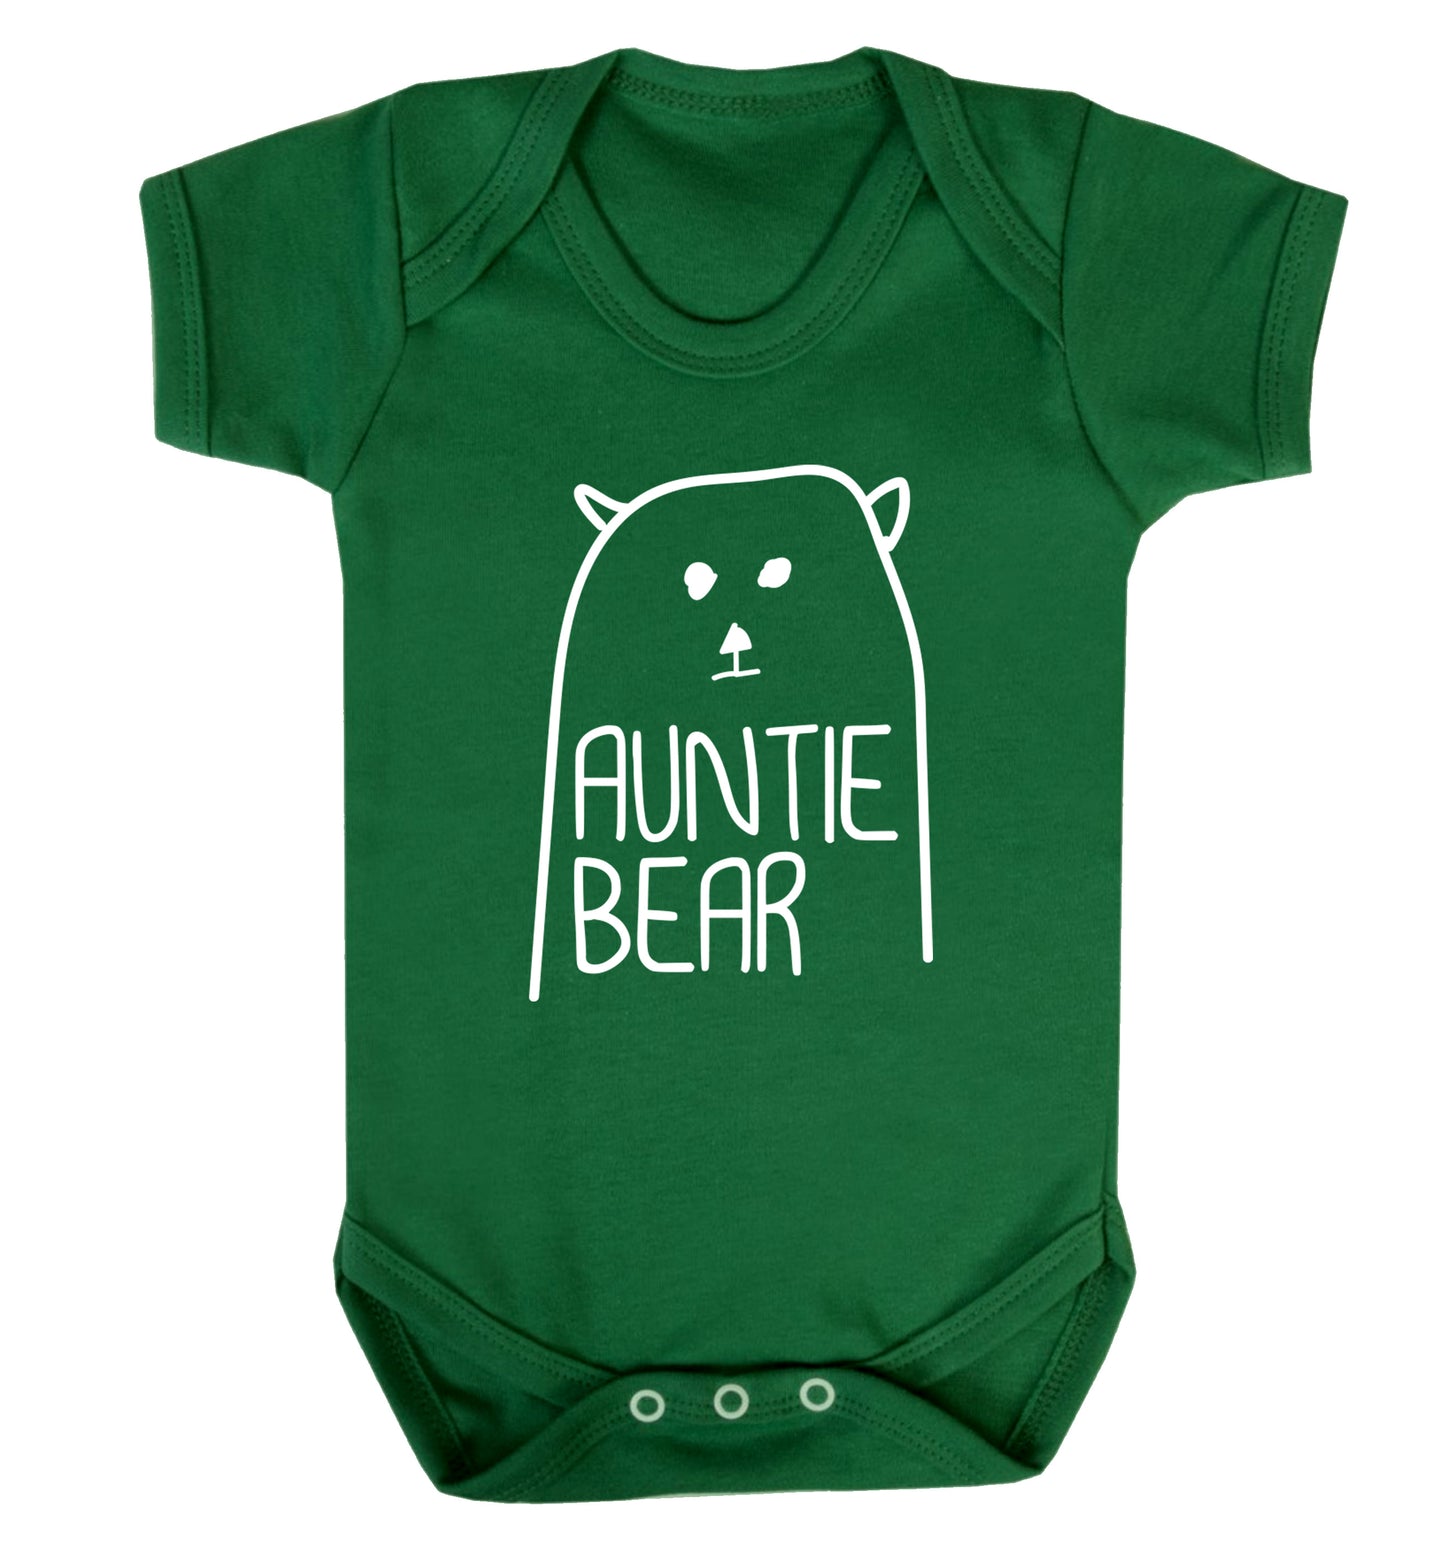 Auntie bear Baby Vest green 18-24 months